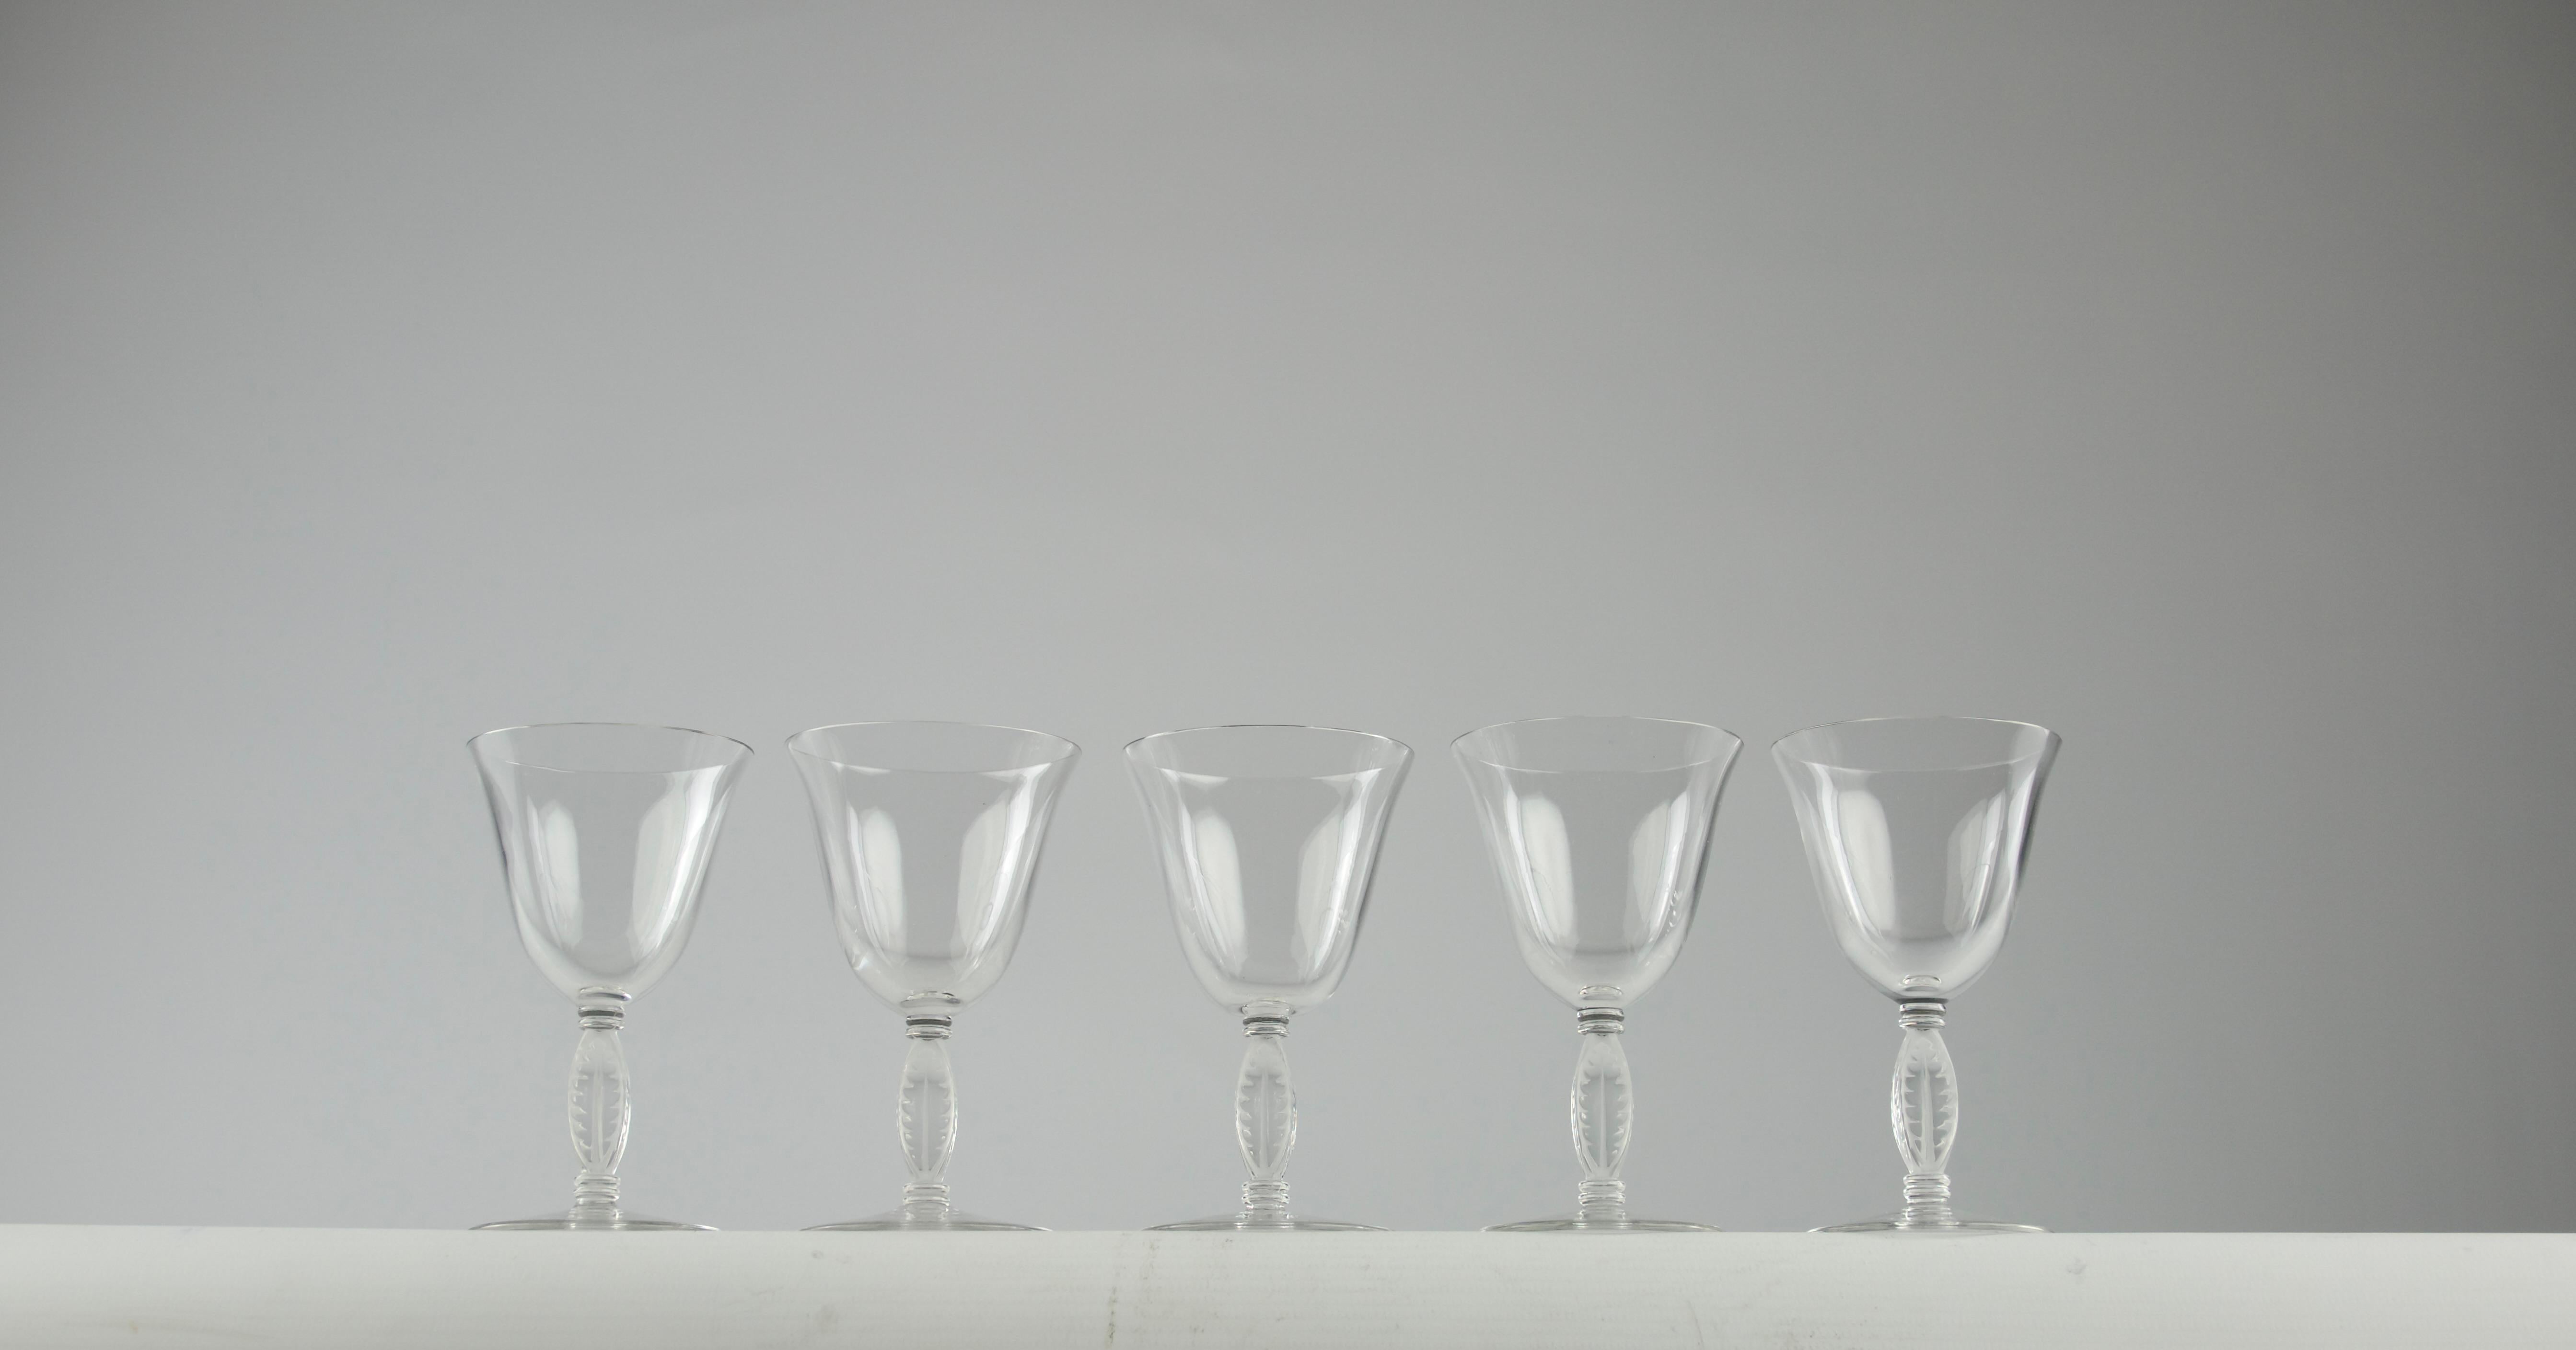 Magnifique ensemble de cinq verres à liqueur Lalique Fontainebleau. D'autres verres à vin de la même collection sont disponibles dans la boutique.

En très bon état.

Dimensions en cm ( H x D ) : 11 x 6.5

Expédition sécurisée.

Conçu pour la